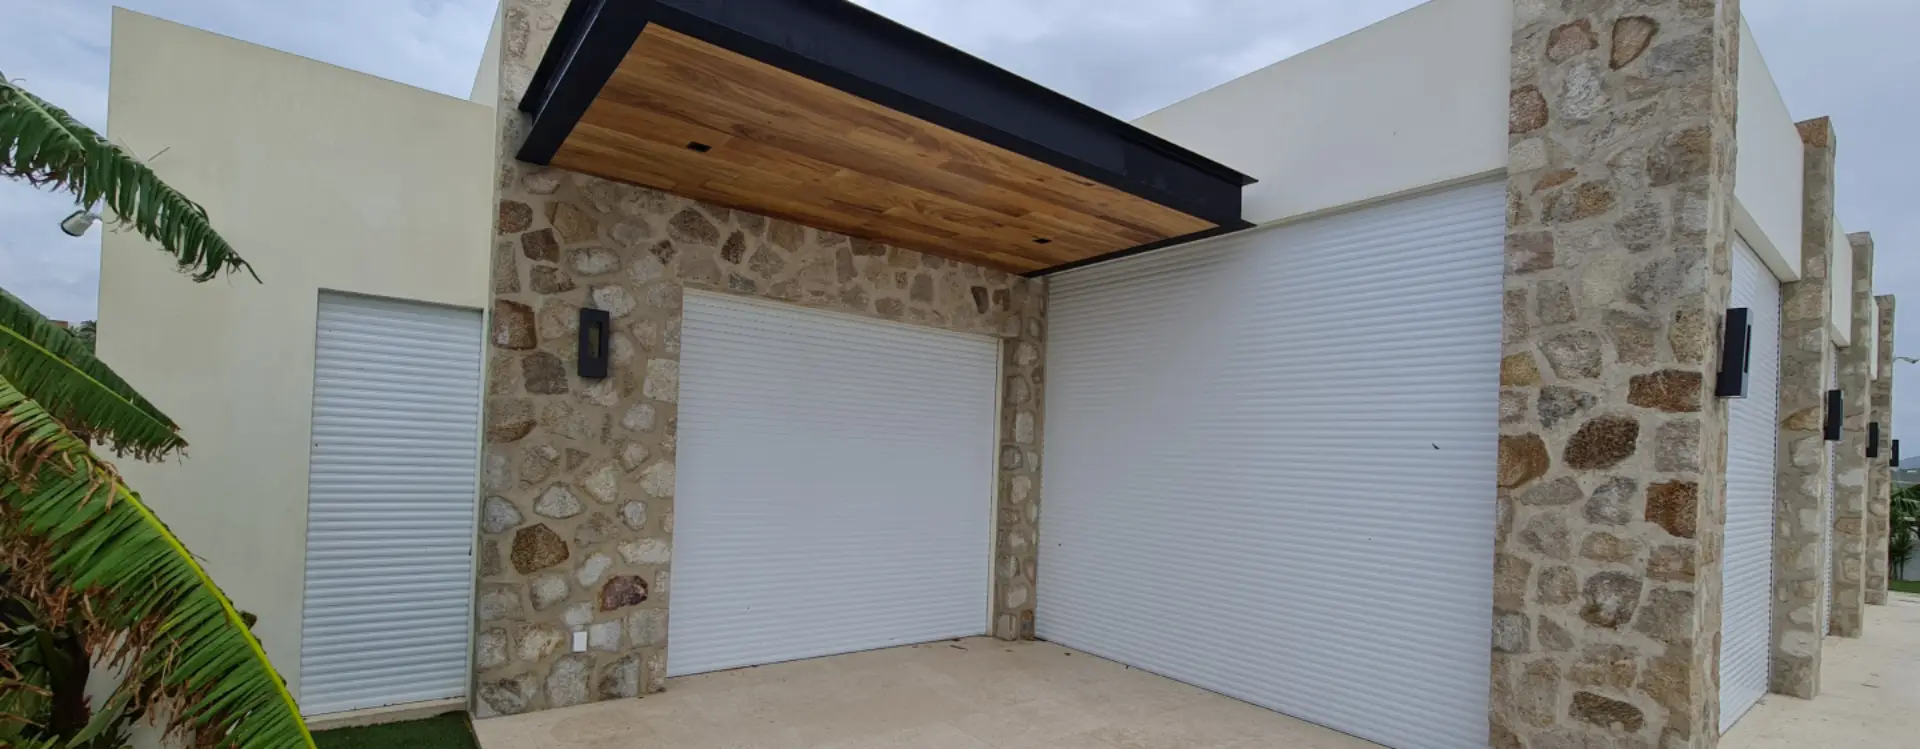 Stormpanel protección contra huracanes de ventanas, paneles y persianas de aluminio. Los Cabos BCS